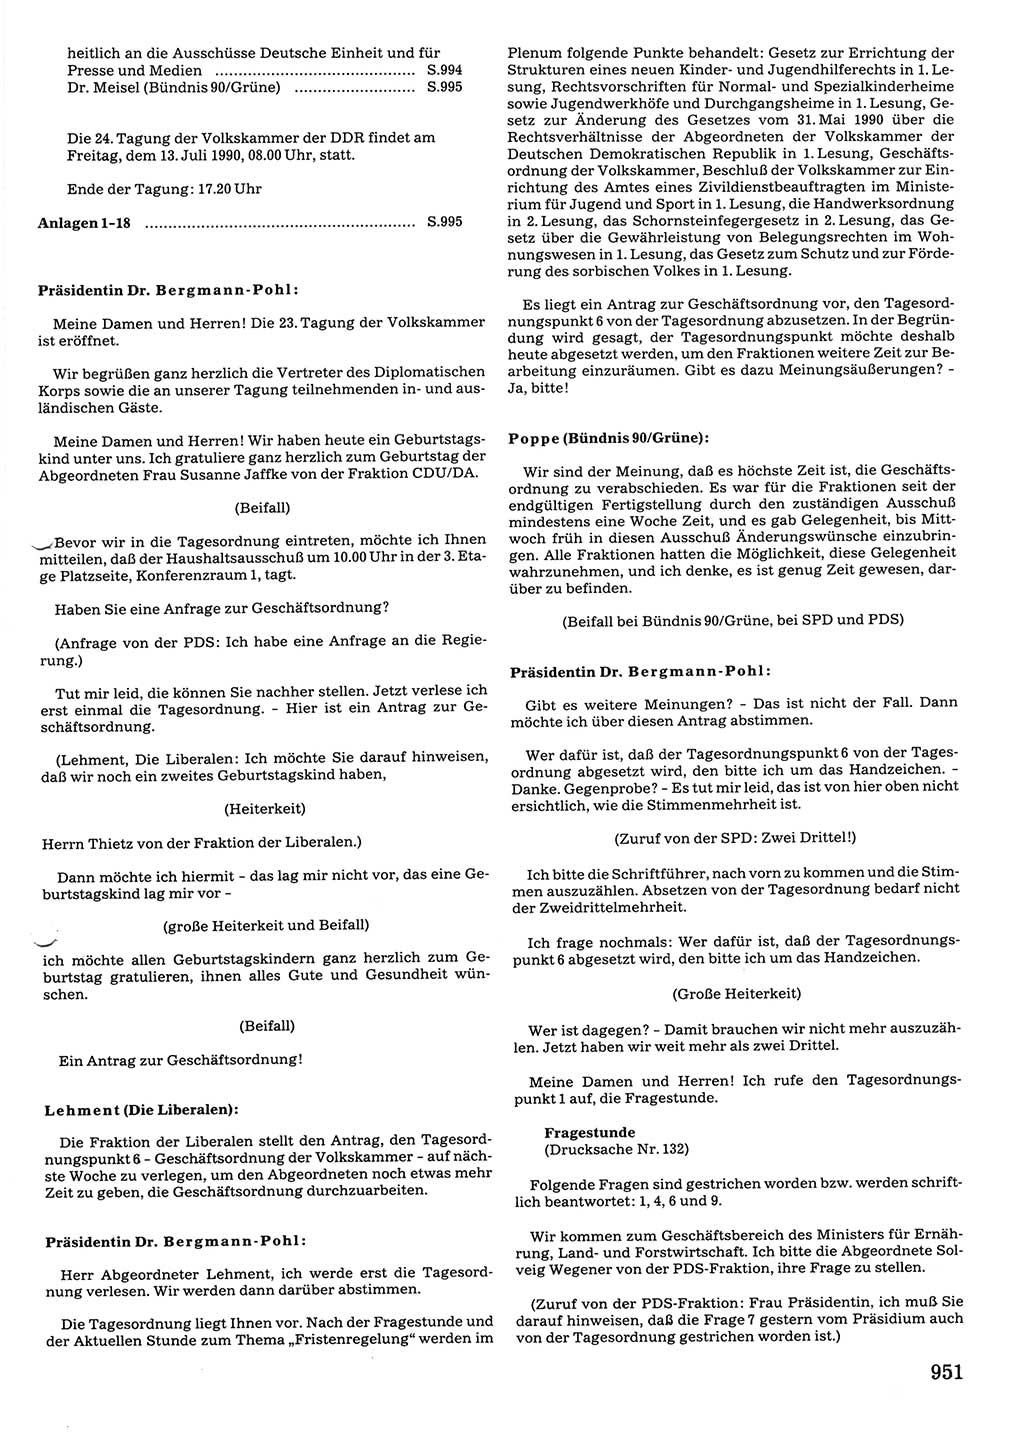 Tagungen der Volkskammer (VK) der Deutschen Demokratischen Republik (DDR), 10. Wahlperiode 1990, Seite 951 (VK. DDR 10. WP. 1990, Prot. Tg. 1-38, 5.4.-2.10.1990, S. 951)